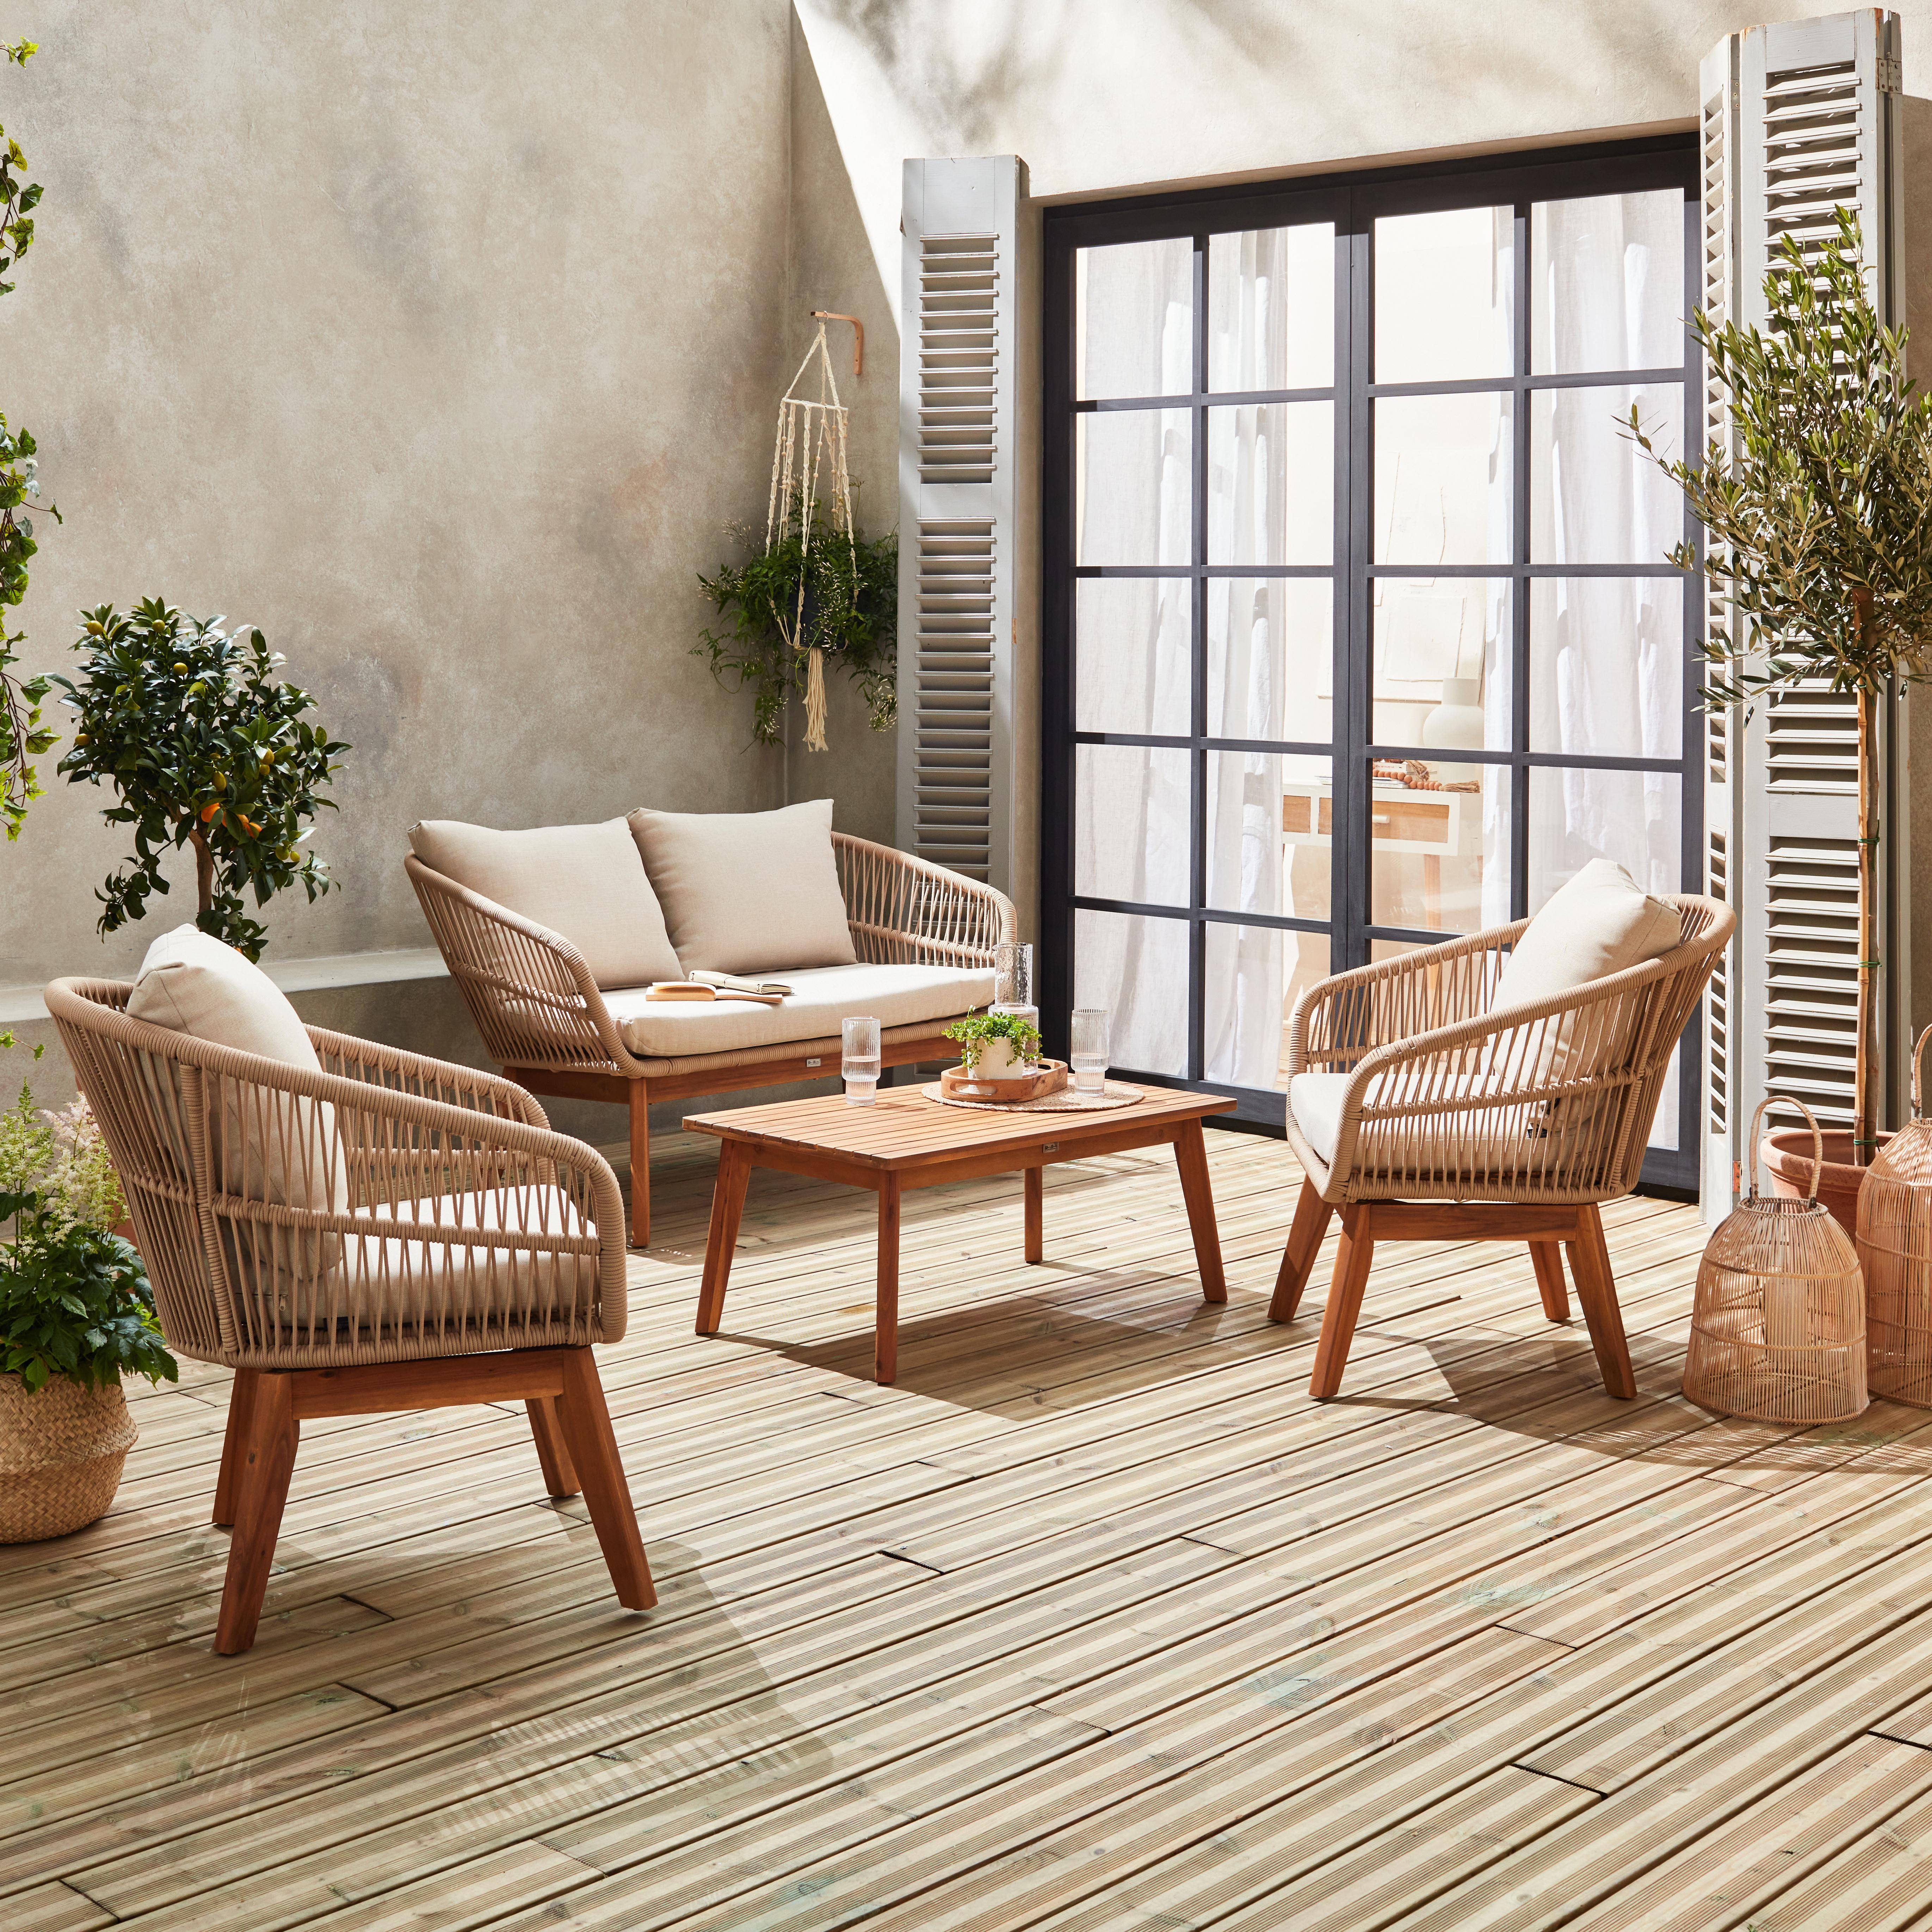 Gartengarnitur 4 Sitze - ROSARIO - aus geflochtenen Seilen, Holz und Aluminium, grau / beige Kissen Photo2